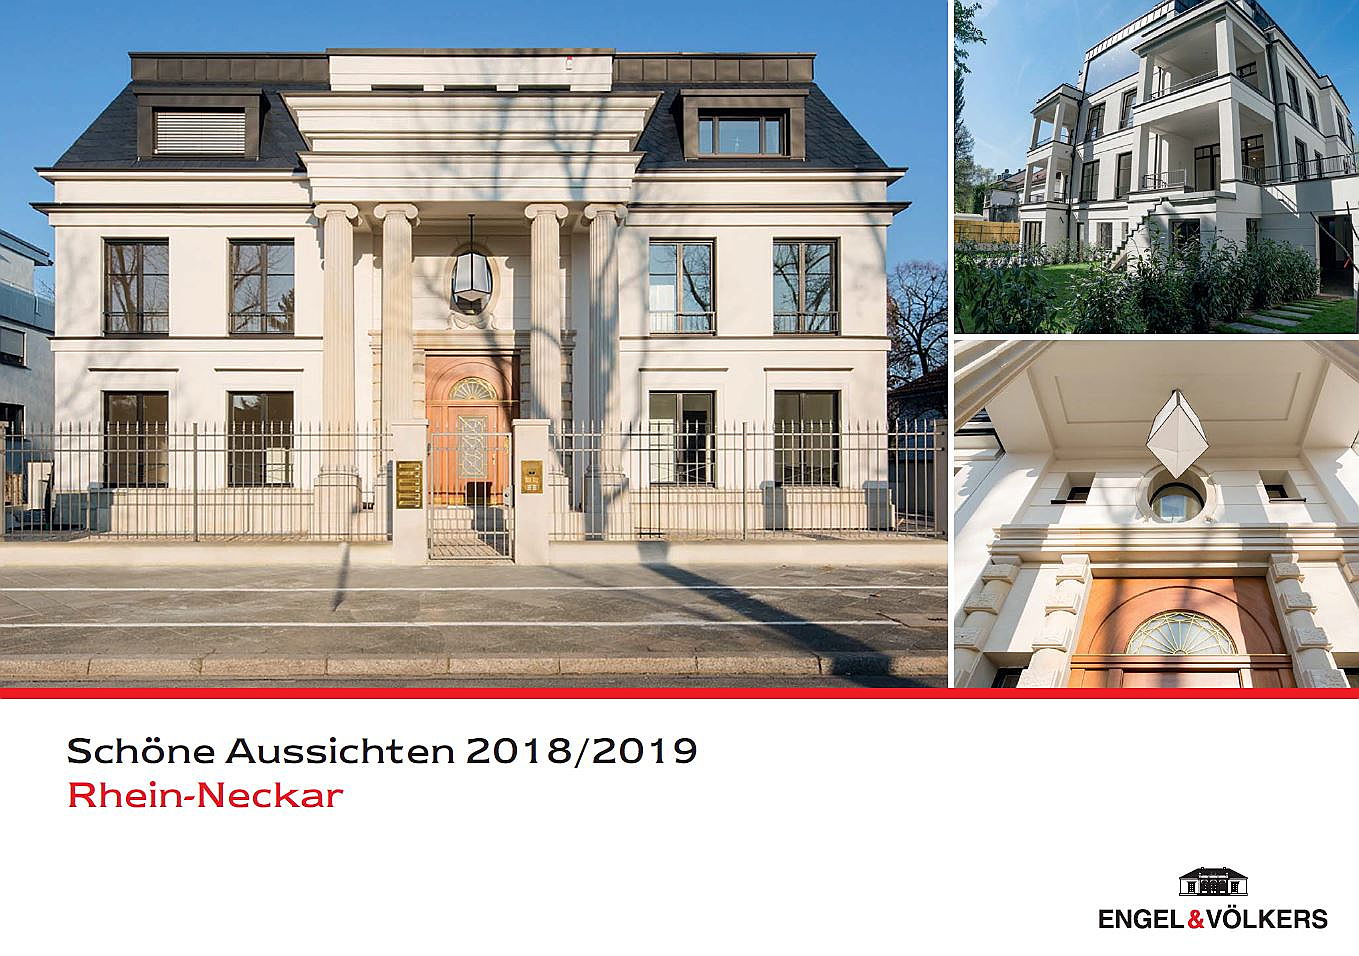  Mannheim
- Schöne Aussichten 2018/2019